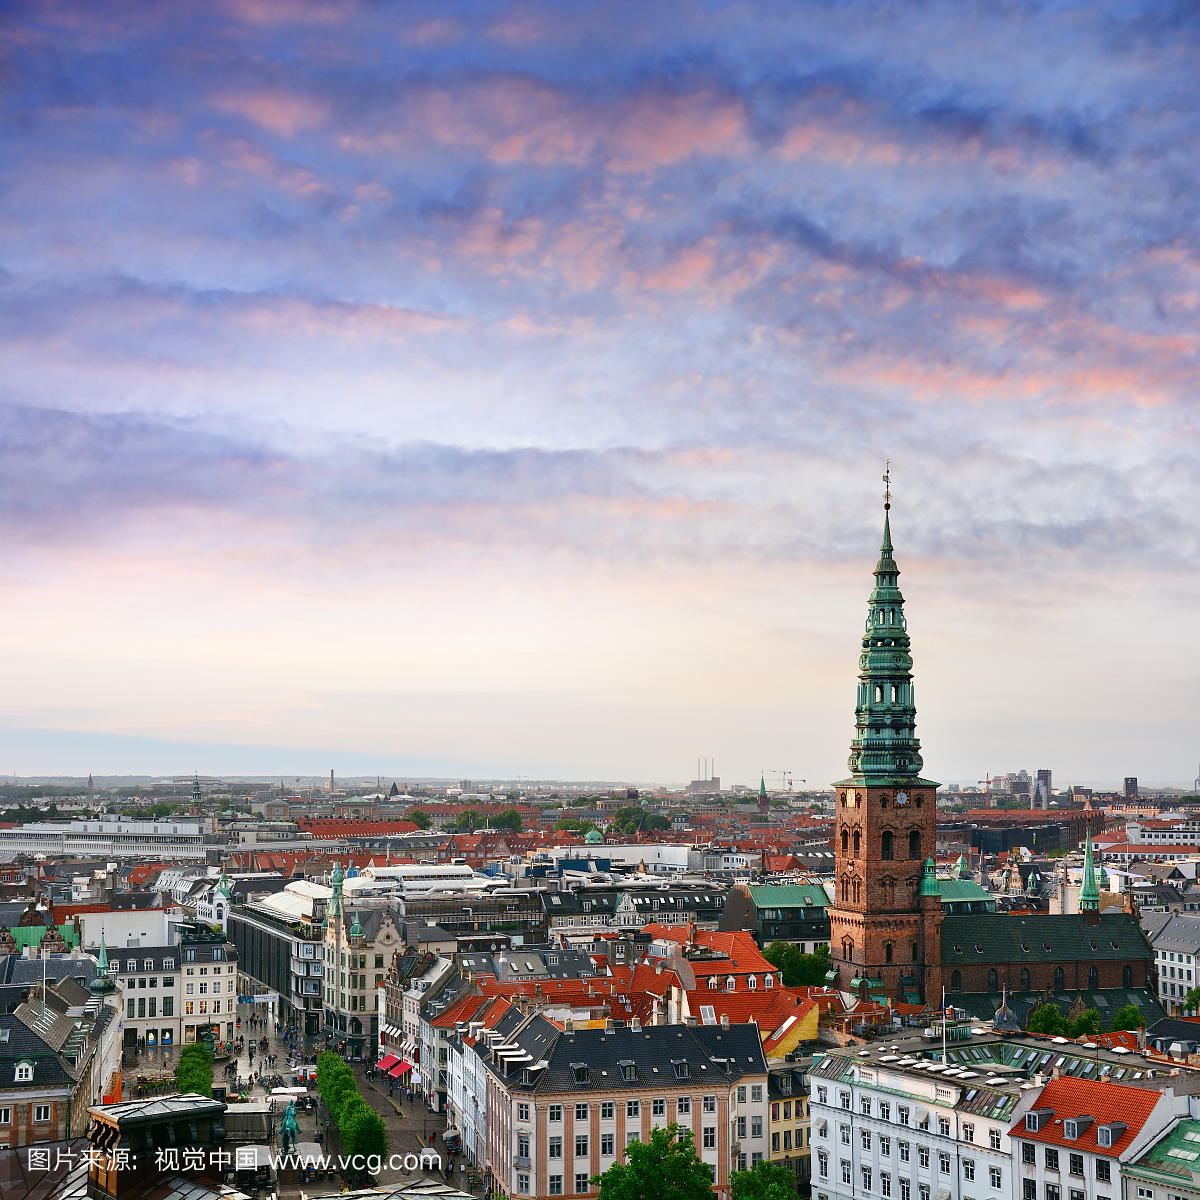 哥本哈根,根本哈根,丹麦首都,城市生活